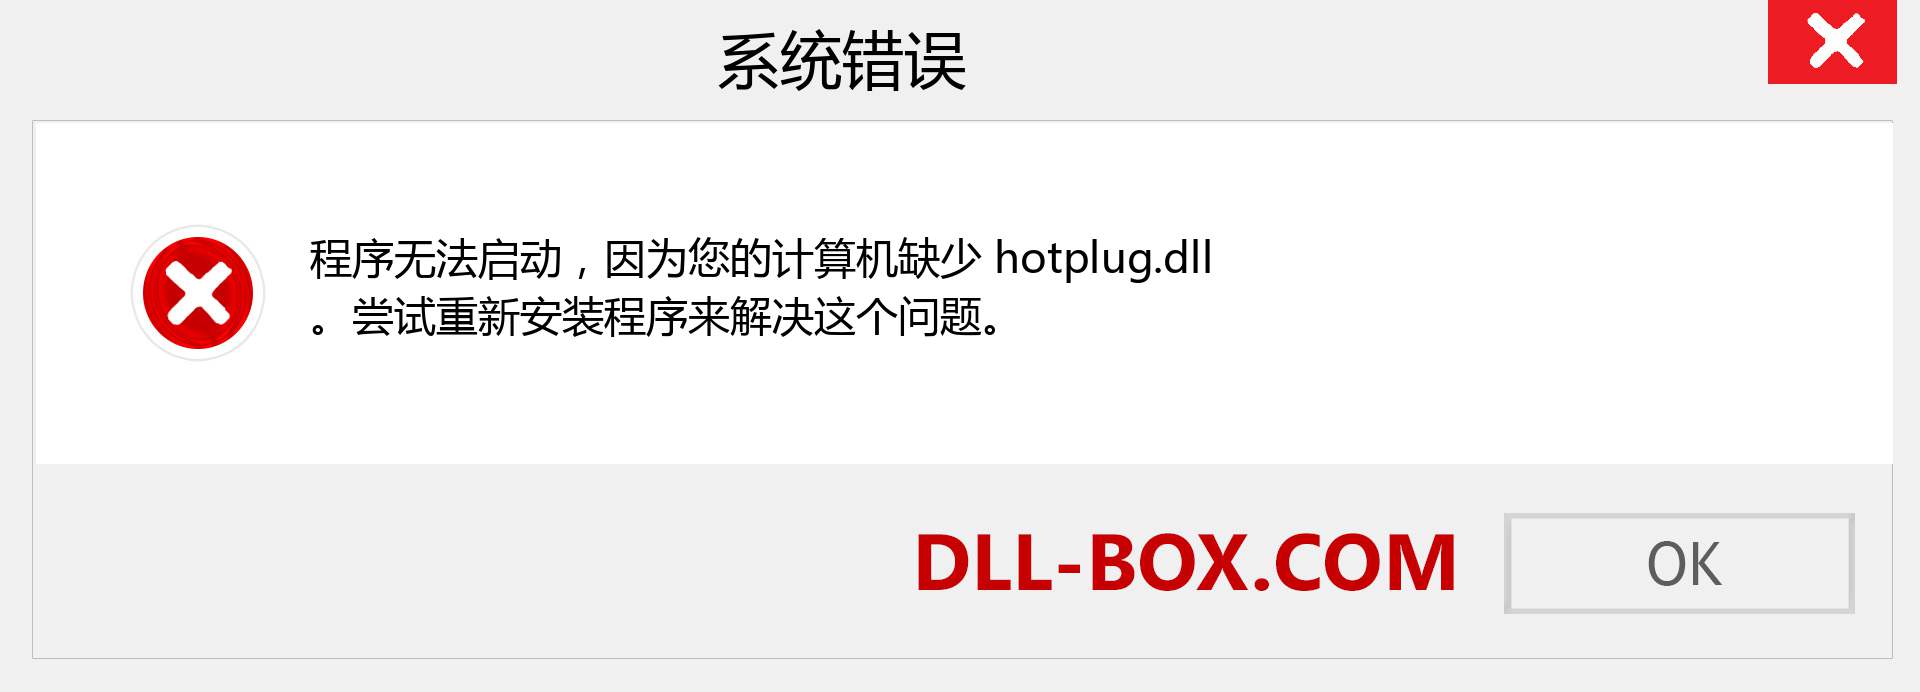 hotplug.dll 文件丢失？。 适用于 Windows 7、8、10 的下载 - 修复 Windows、照片、图像上的 hotplug dll 丢失错误